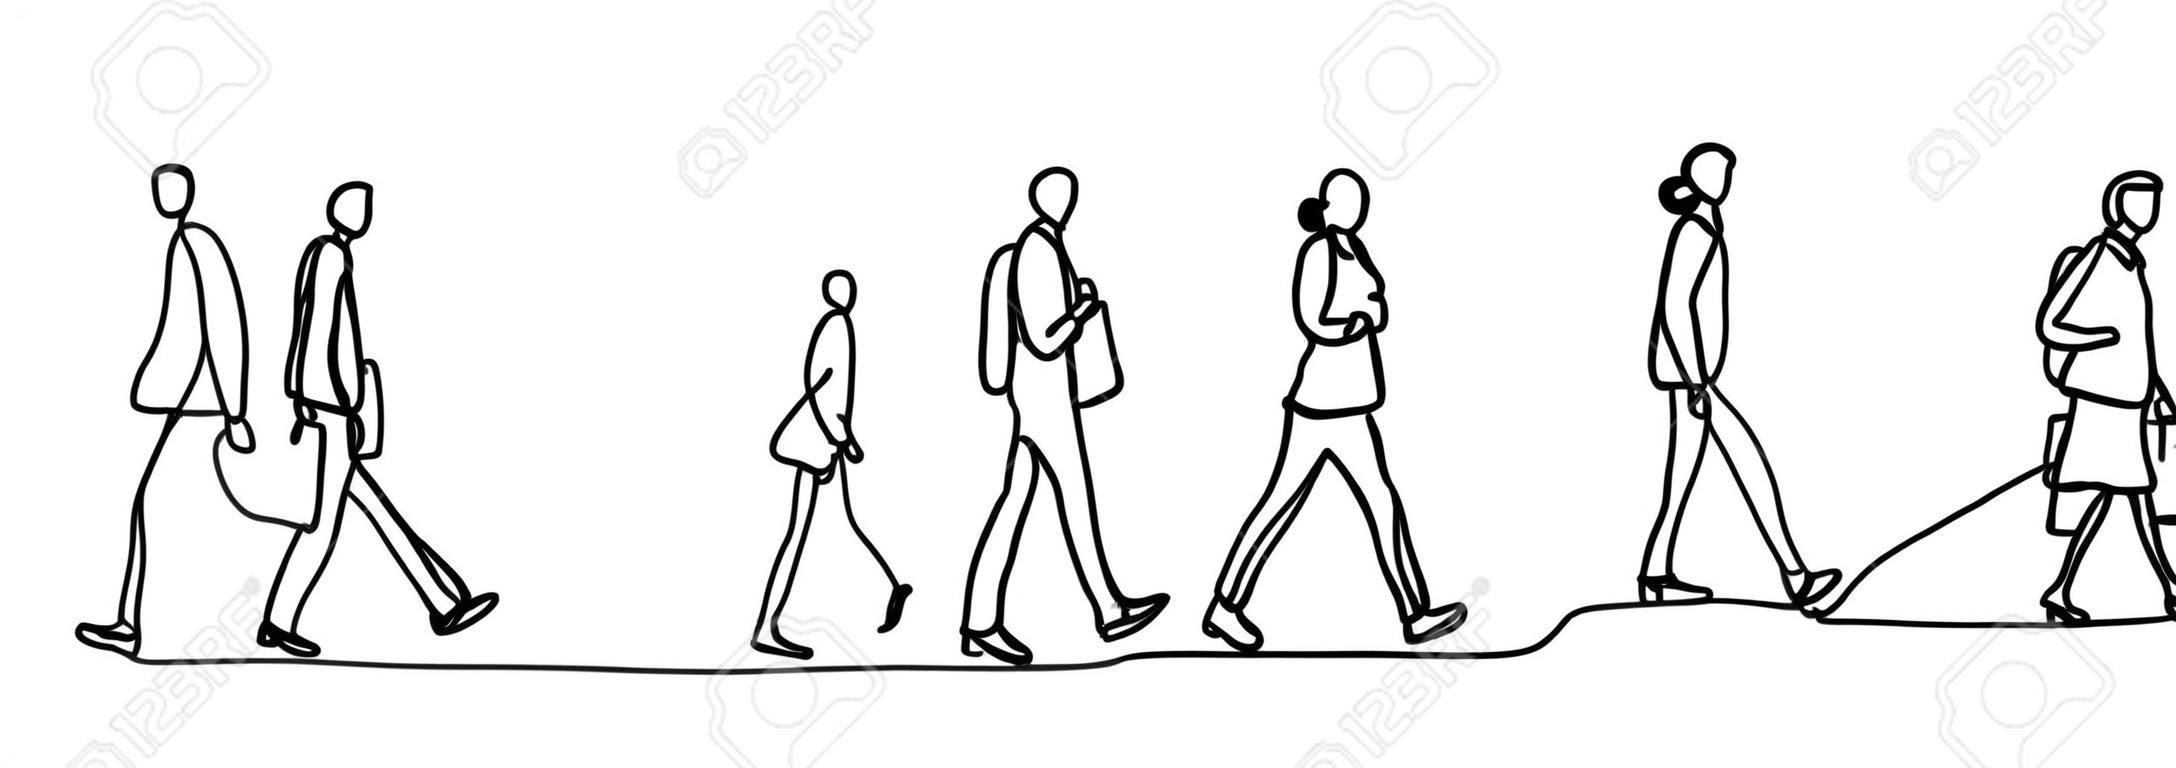 Pendolari urbani una linea continua disegno minimalismo disegno schizzo disegnato a mano illustrazione vettoriale. Persone che camminano prima o dopo l'orario di lavoro.